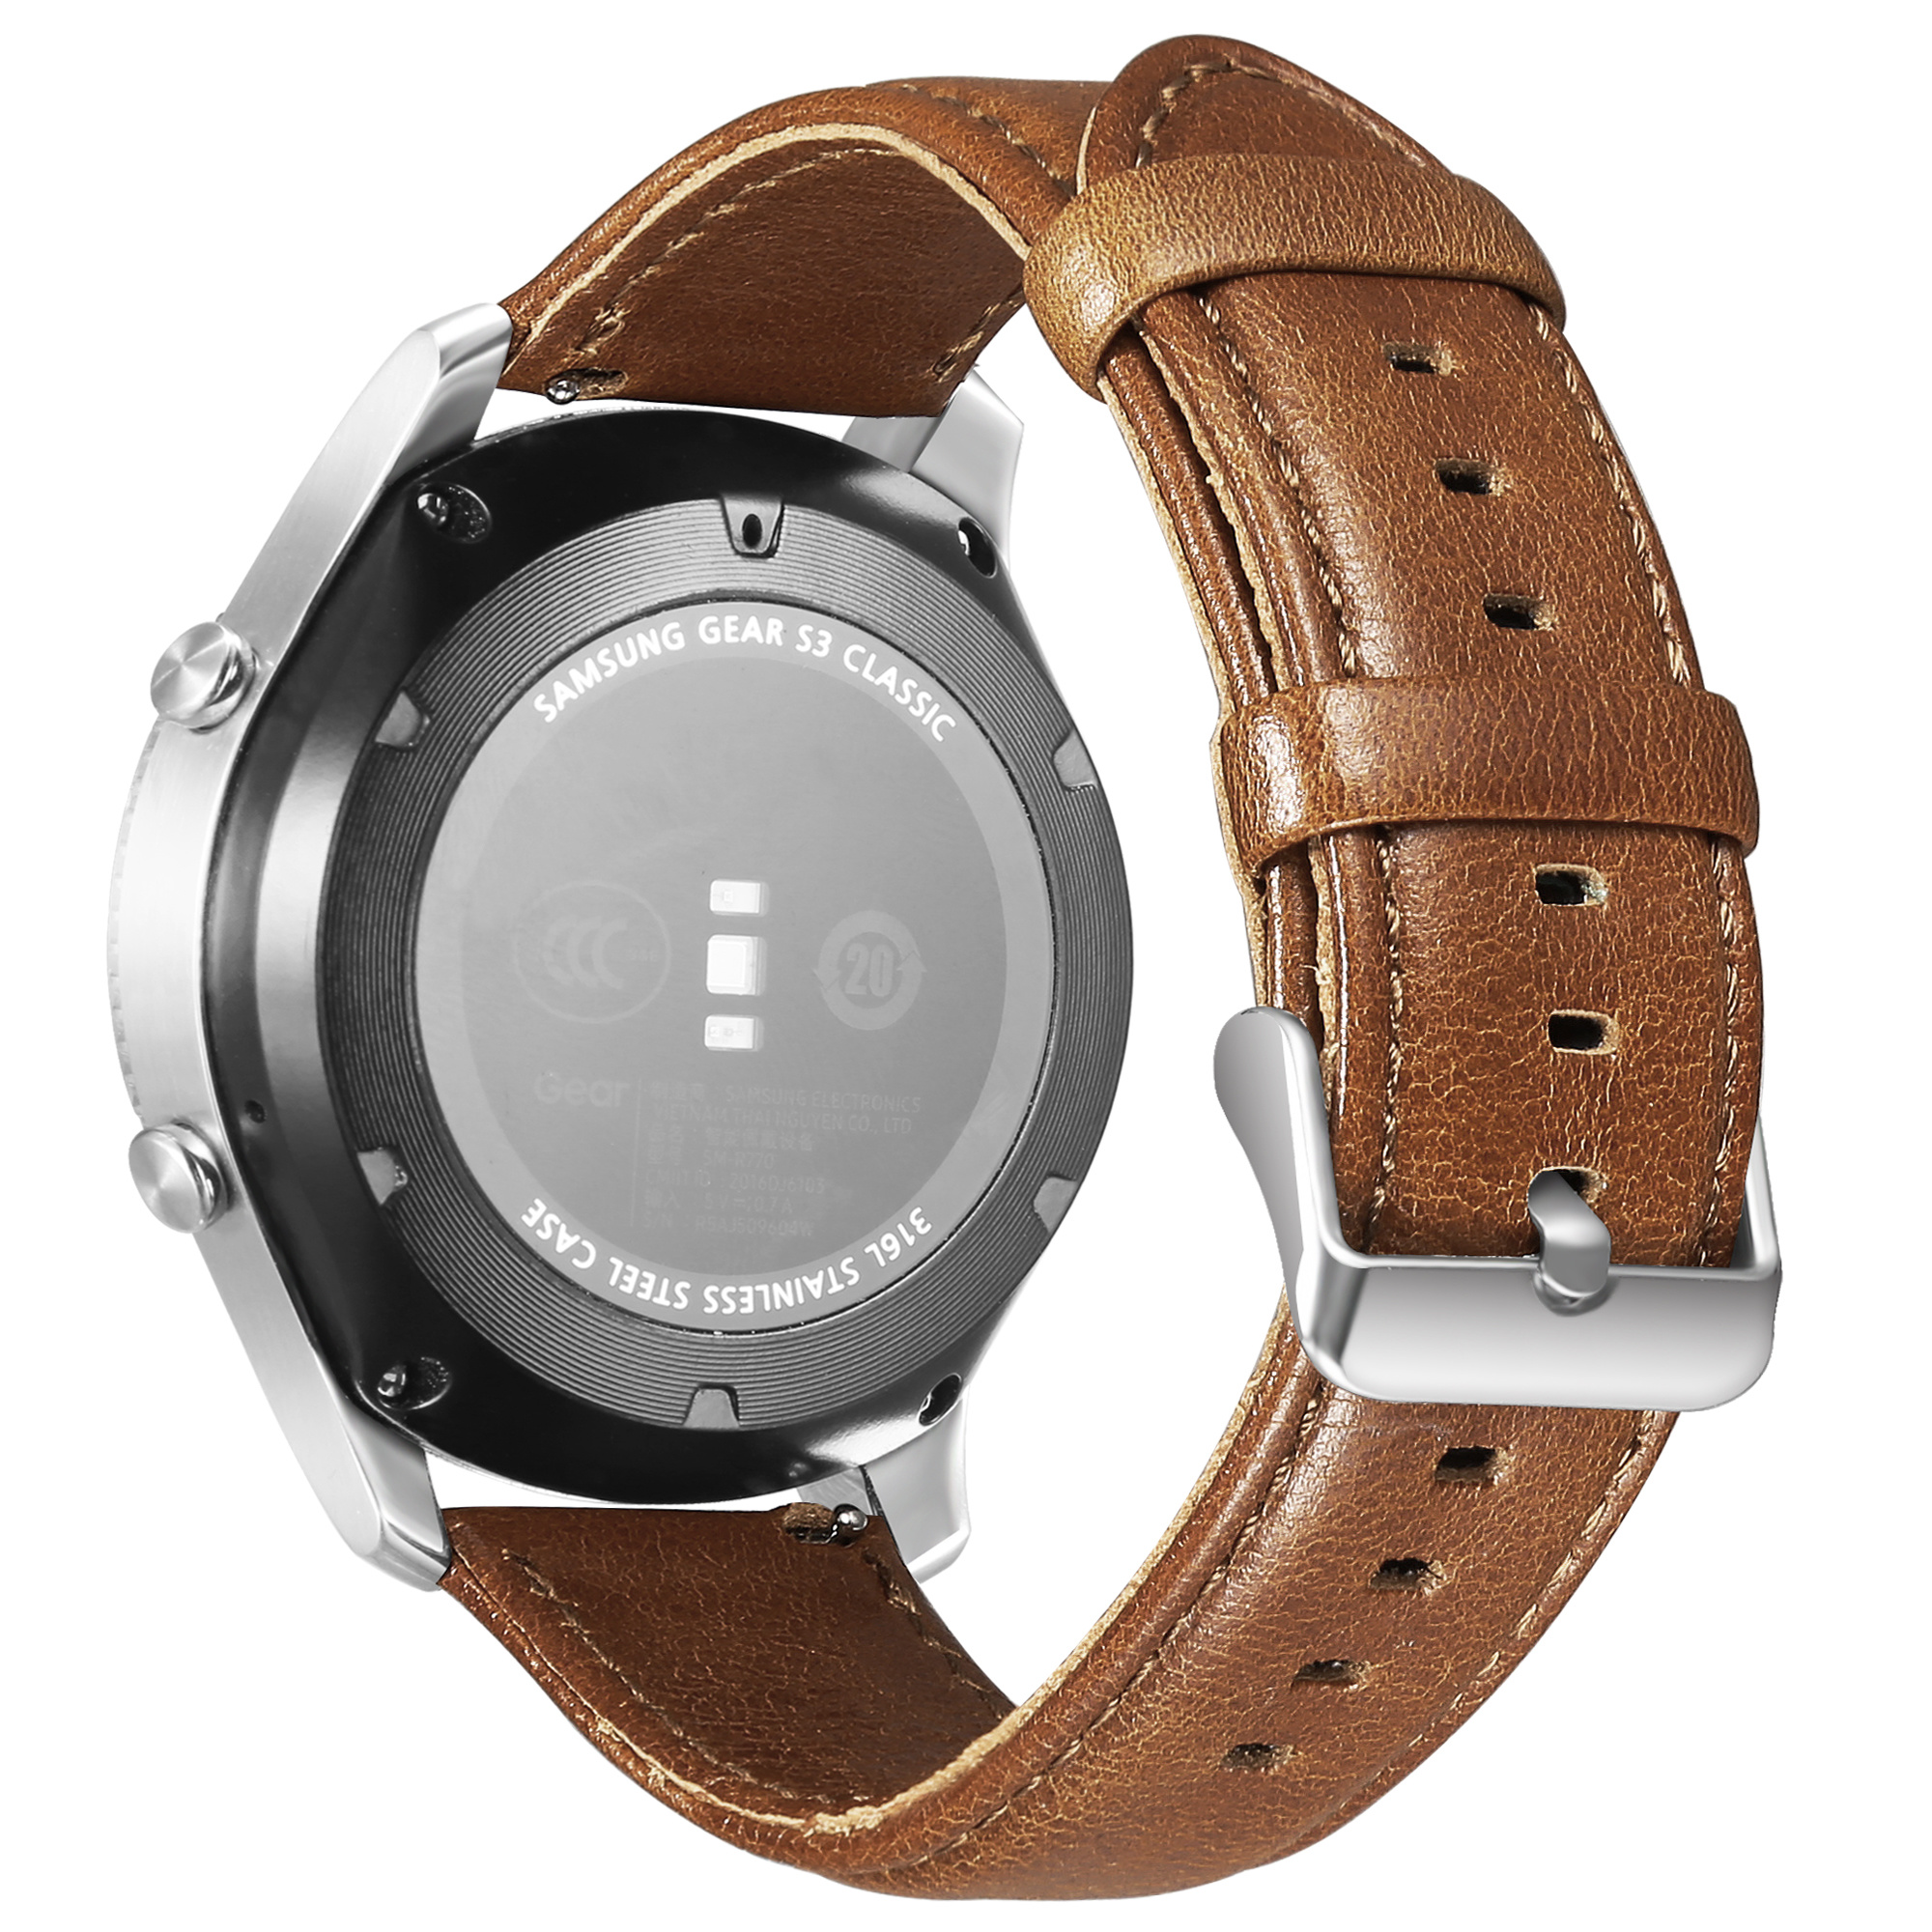 Correa de cuero genuino para el Samsung Galaxy Watch - marrón claro